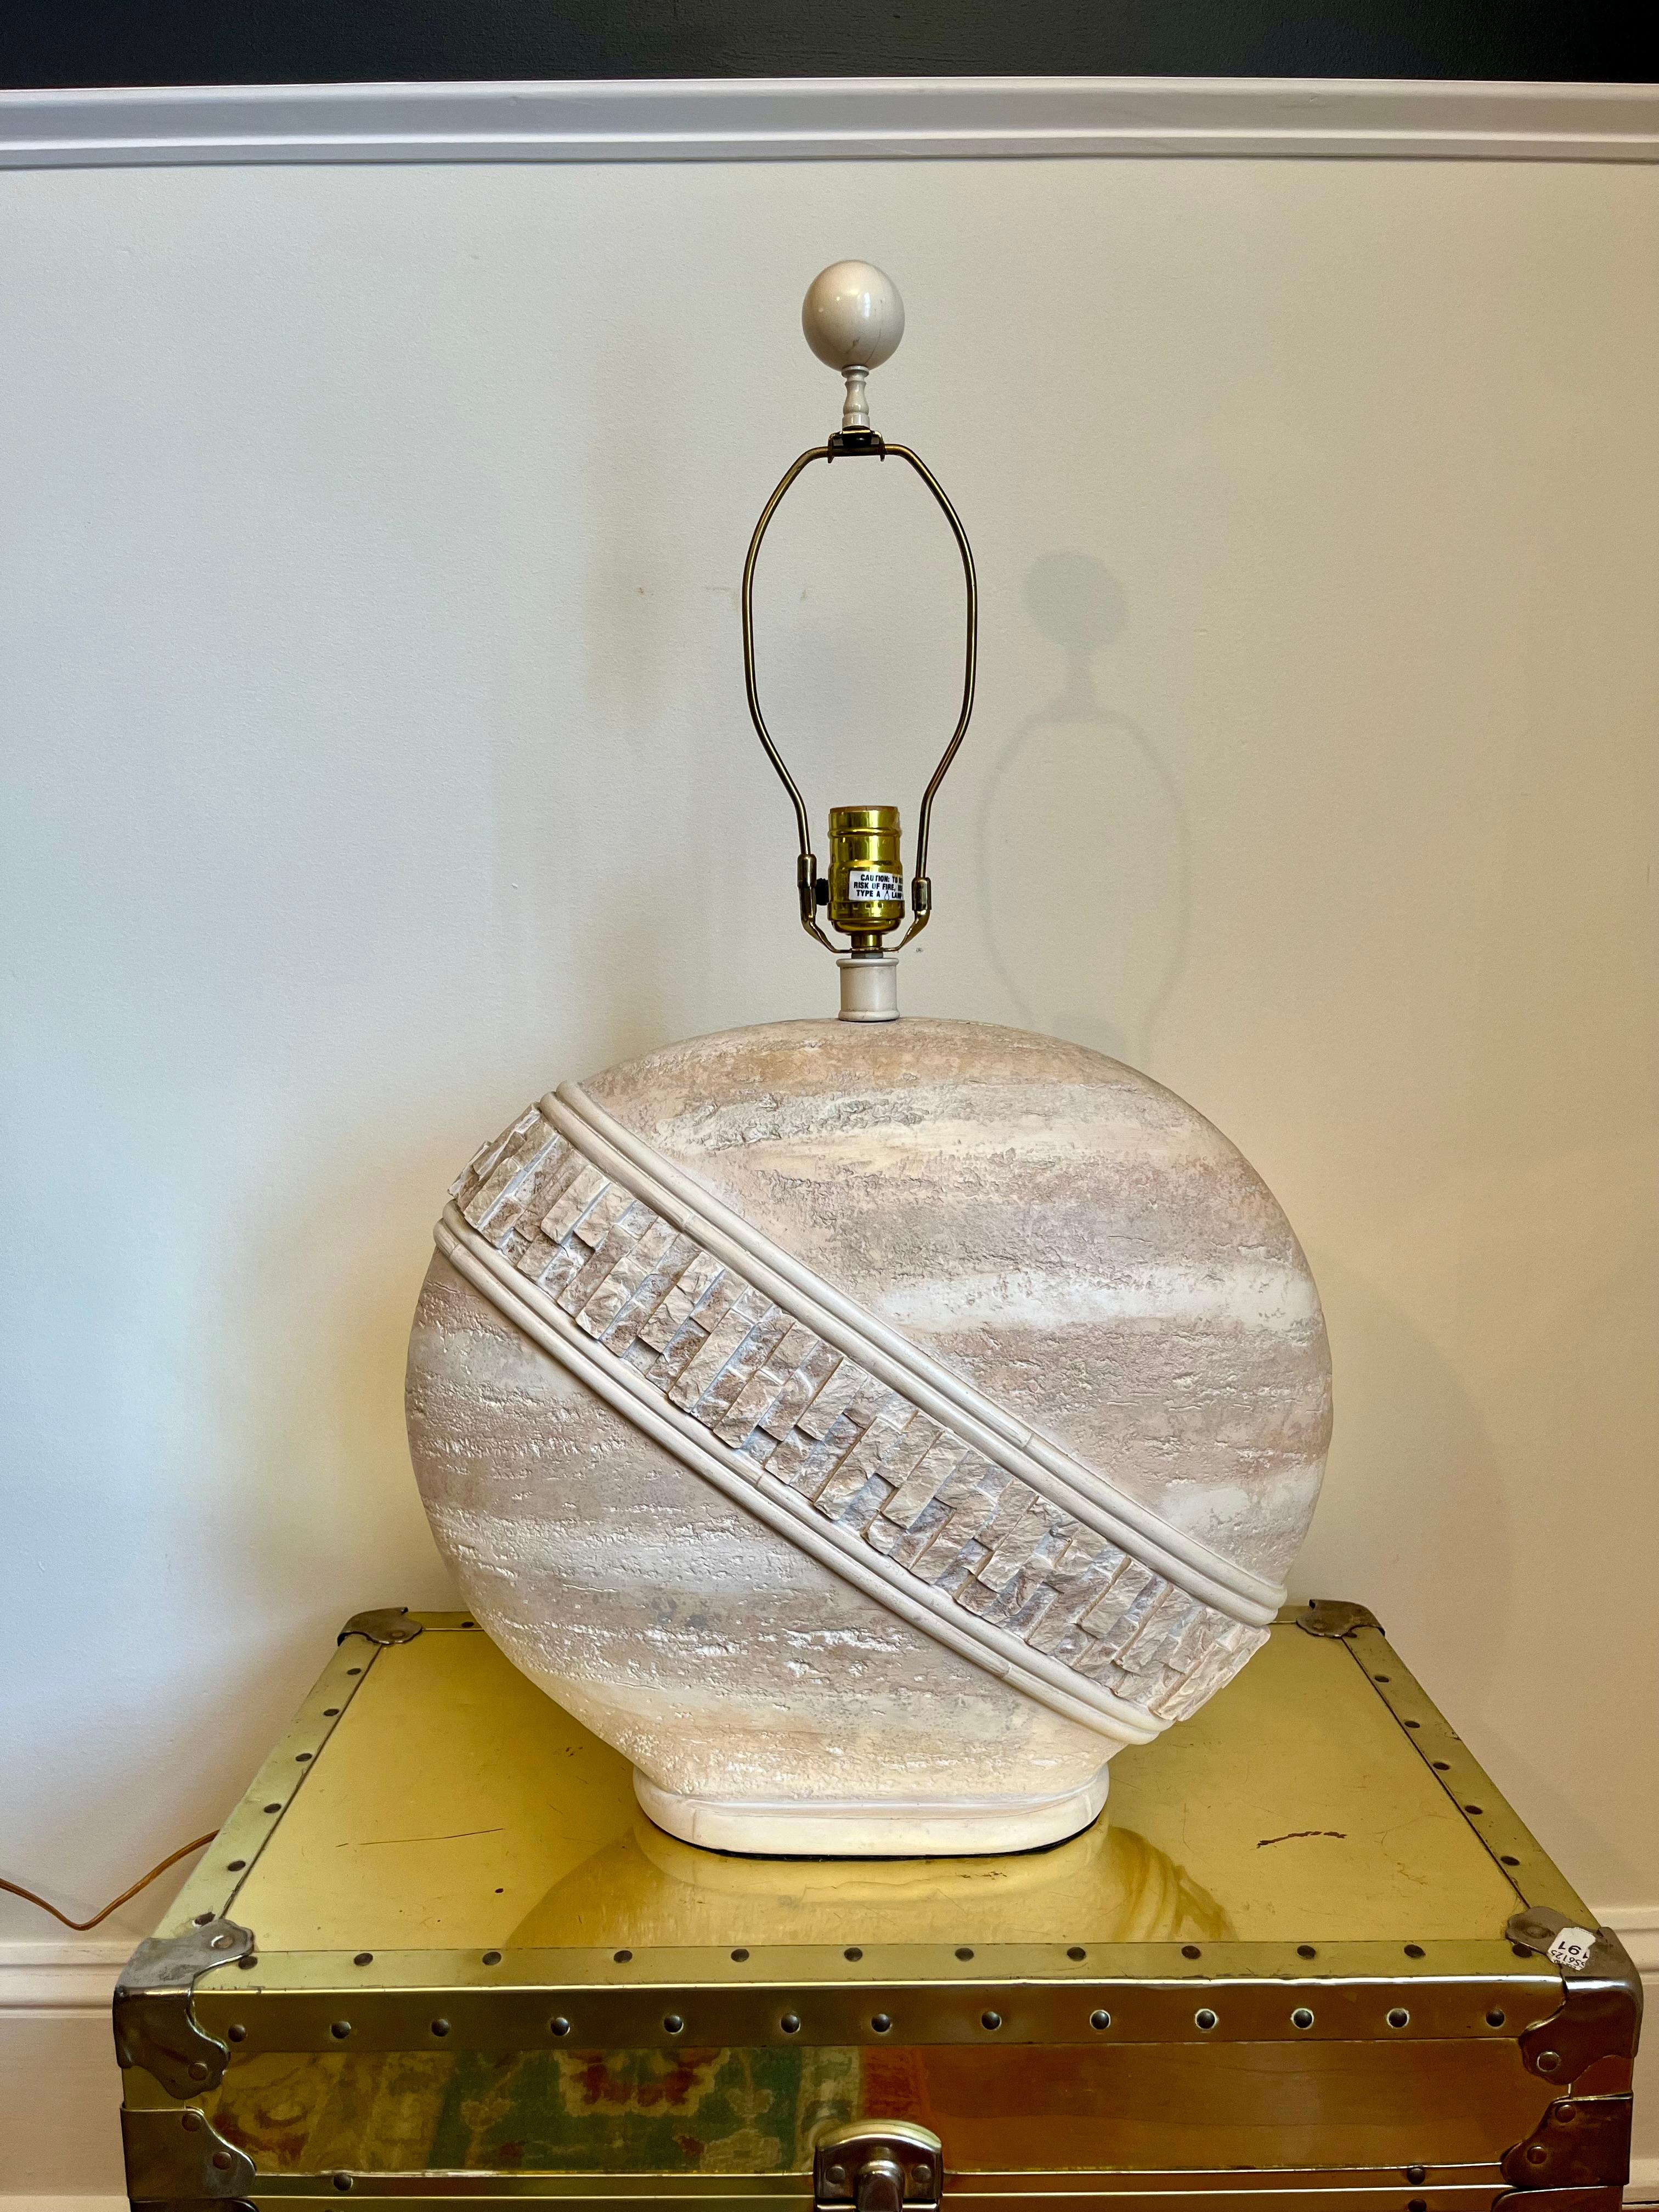 Exceptionnelle lampe postmoderne vintage. Elle est composée d'une fausse pierre tessellée beige et d'une partie supérieure polie. Joli visuel avec des détails anguleux posés sur une forme ovale. Pacific Coast MFG.